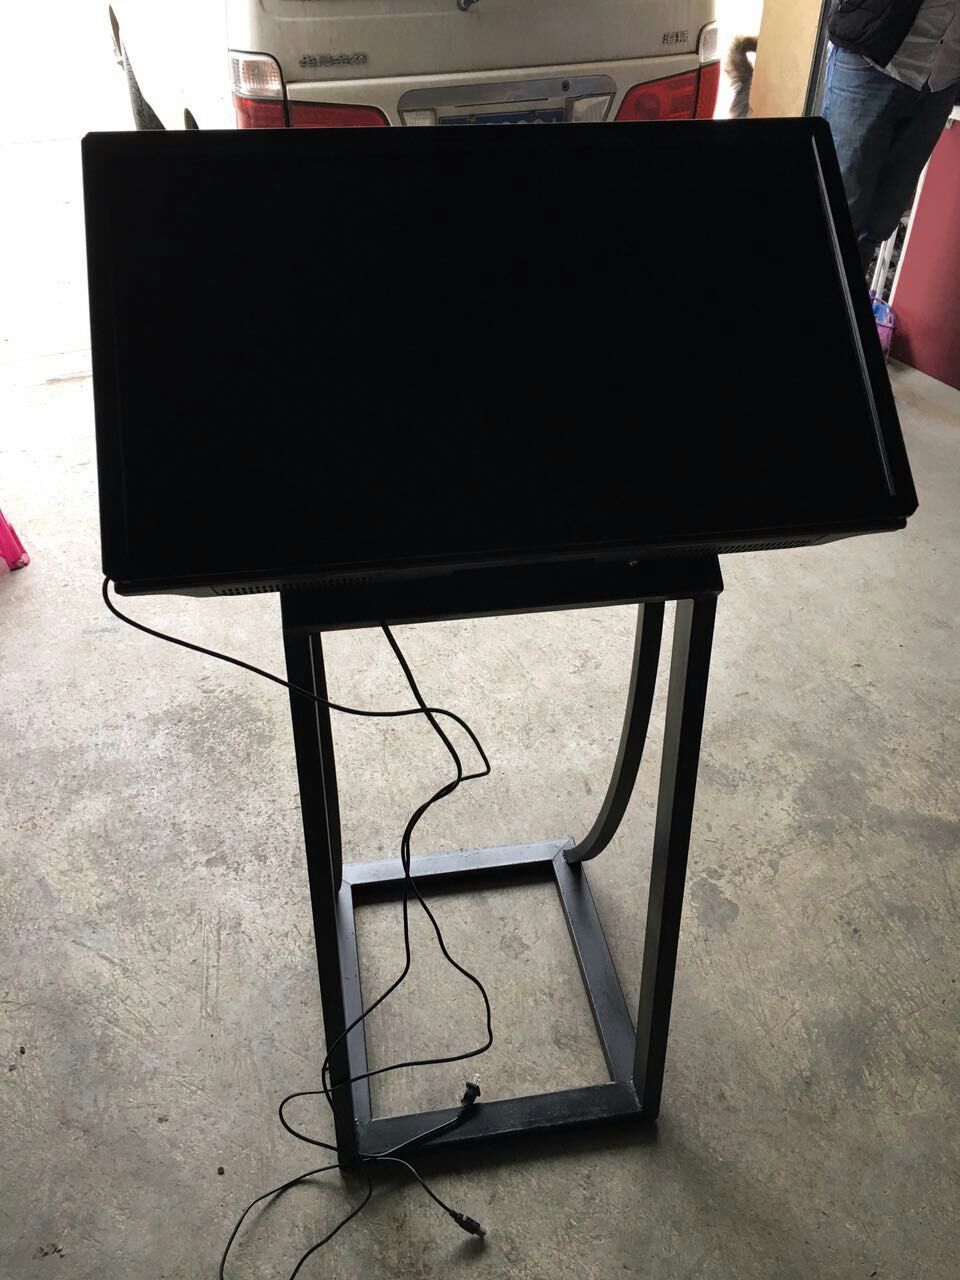 上海黄浦庆典拼接屏搭建公司 活动发光签到背景板搭建 3d电视机